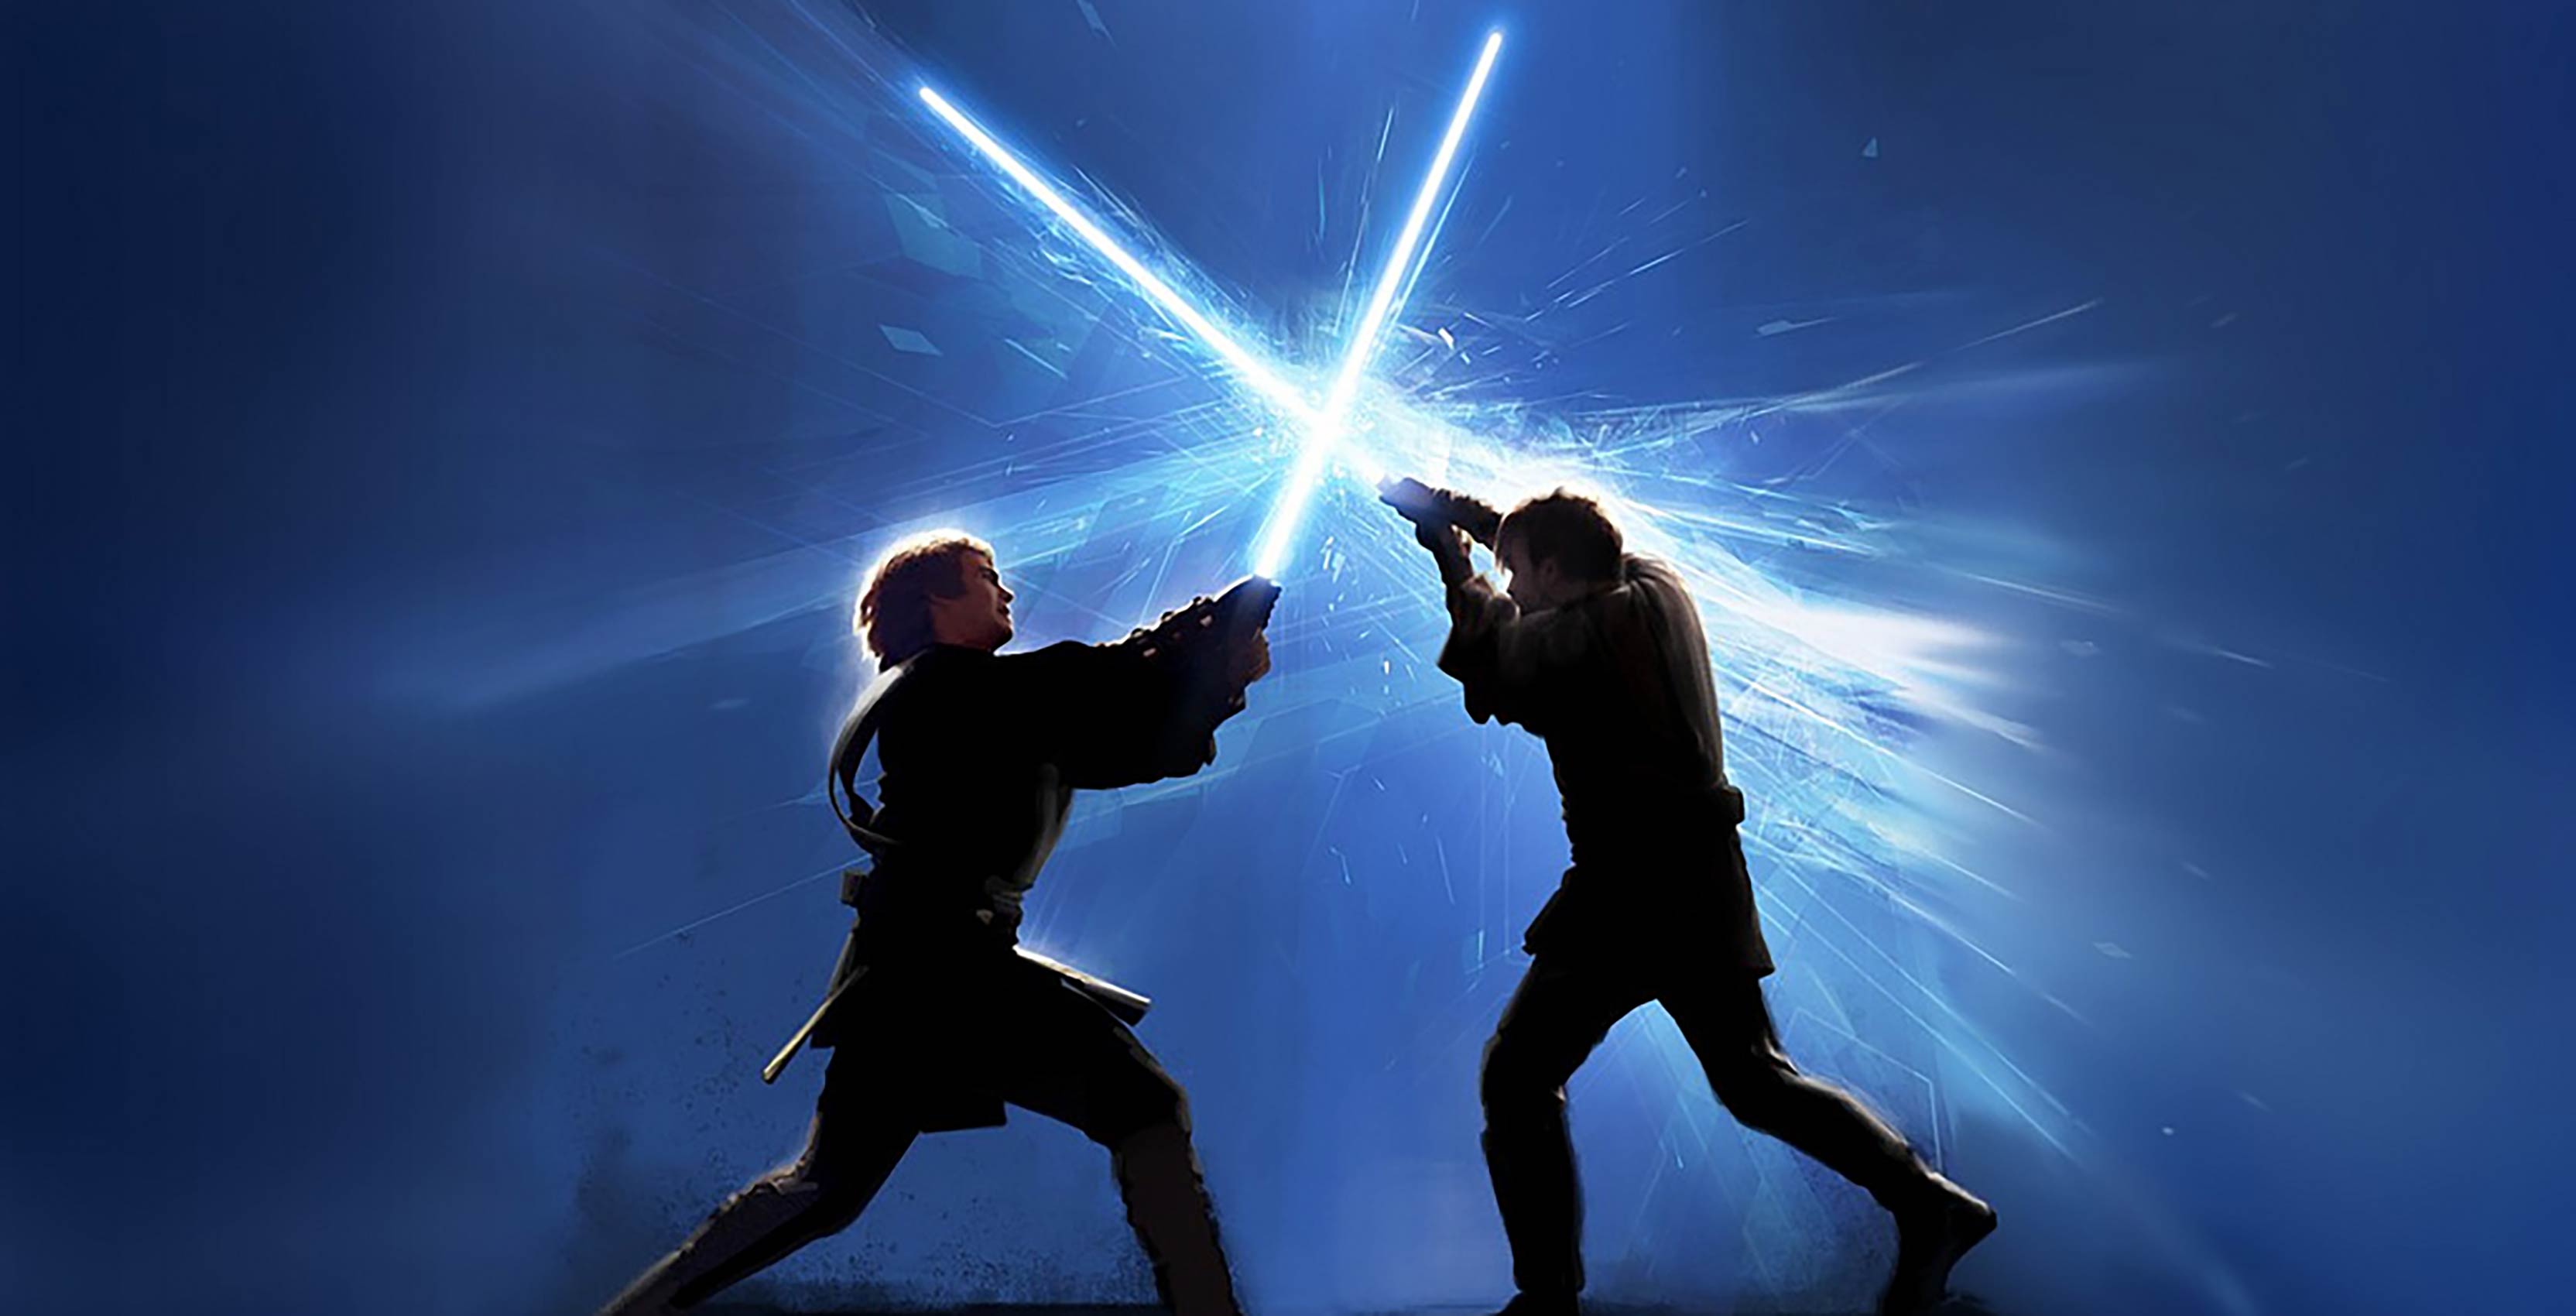 Star Wars Anakin vs Obi-Wan